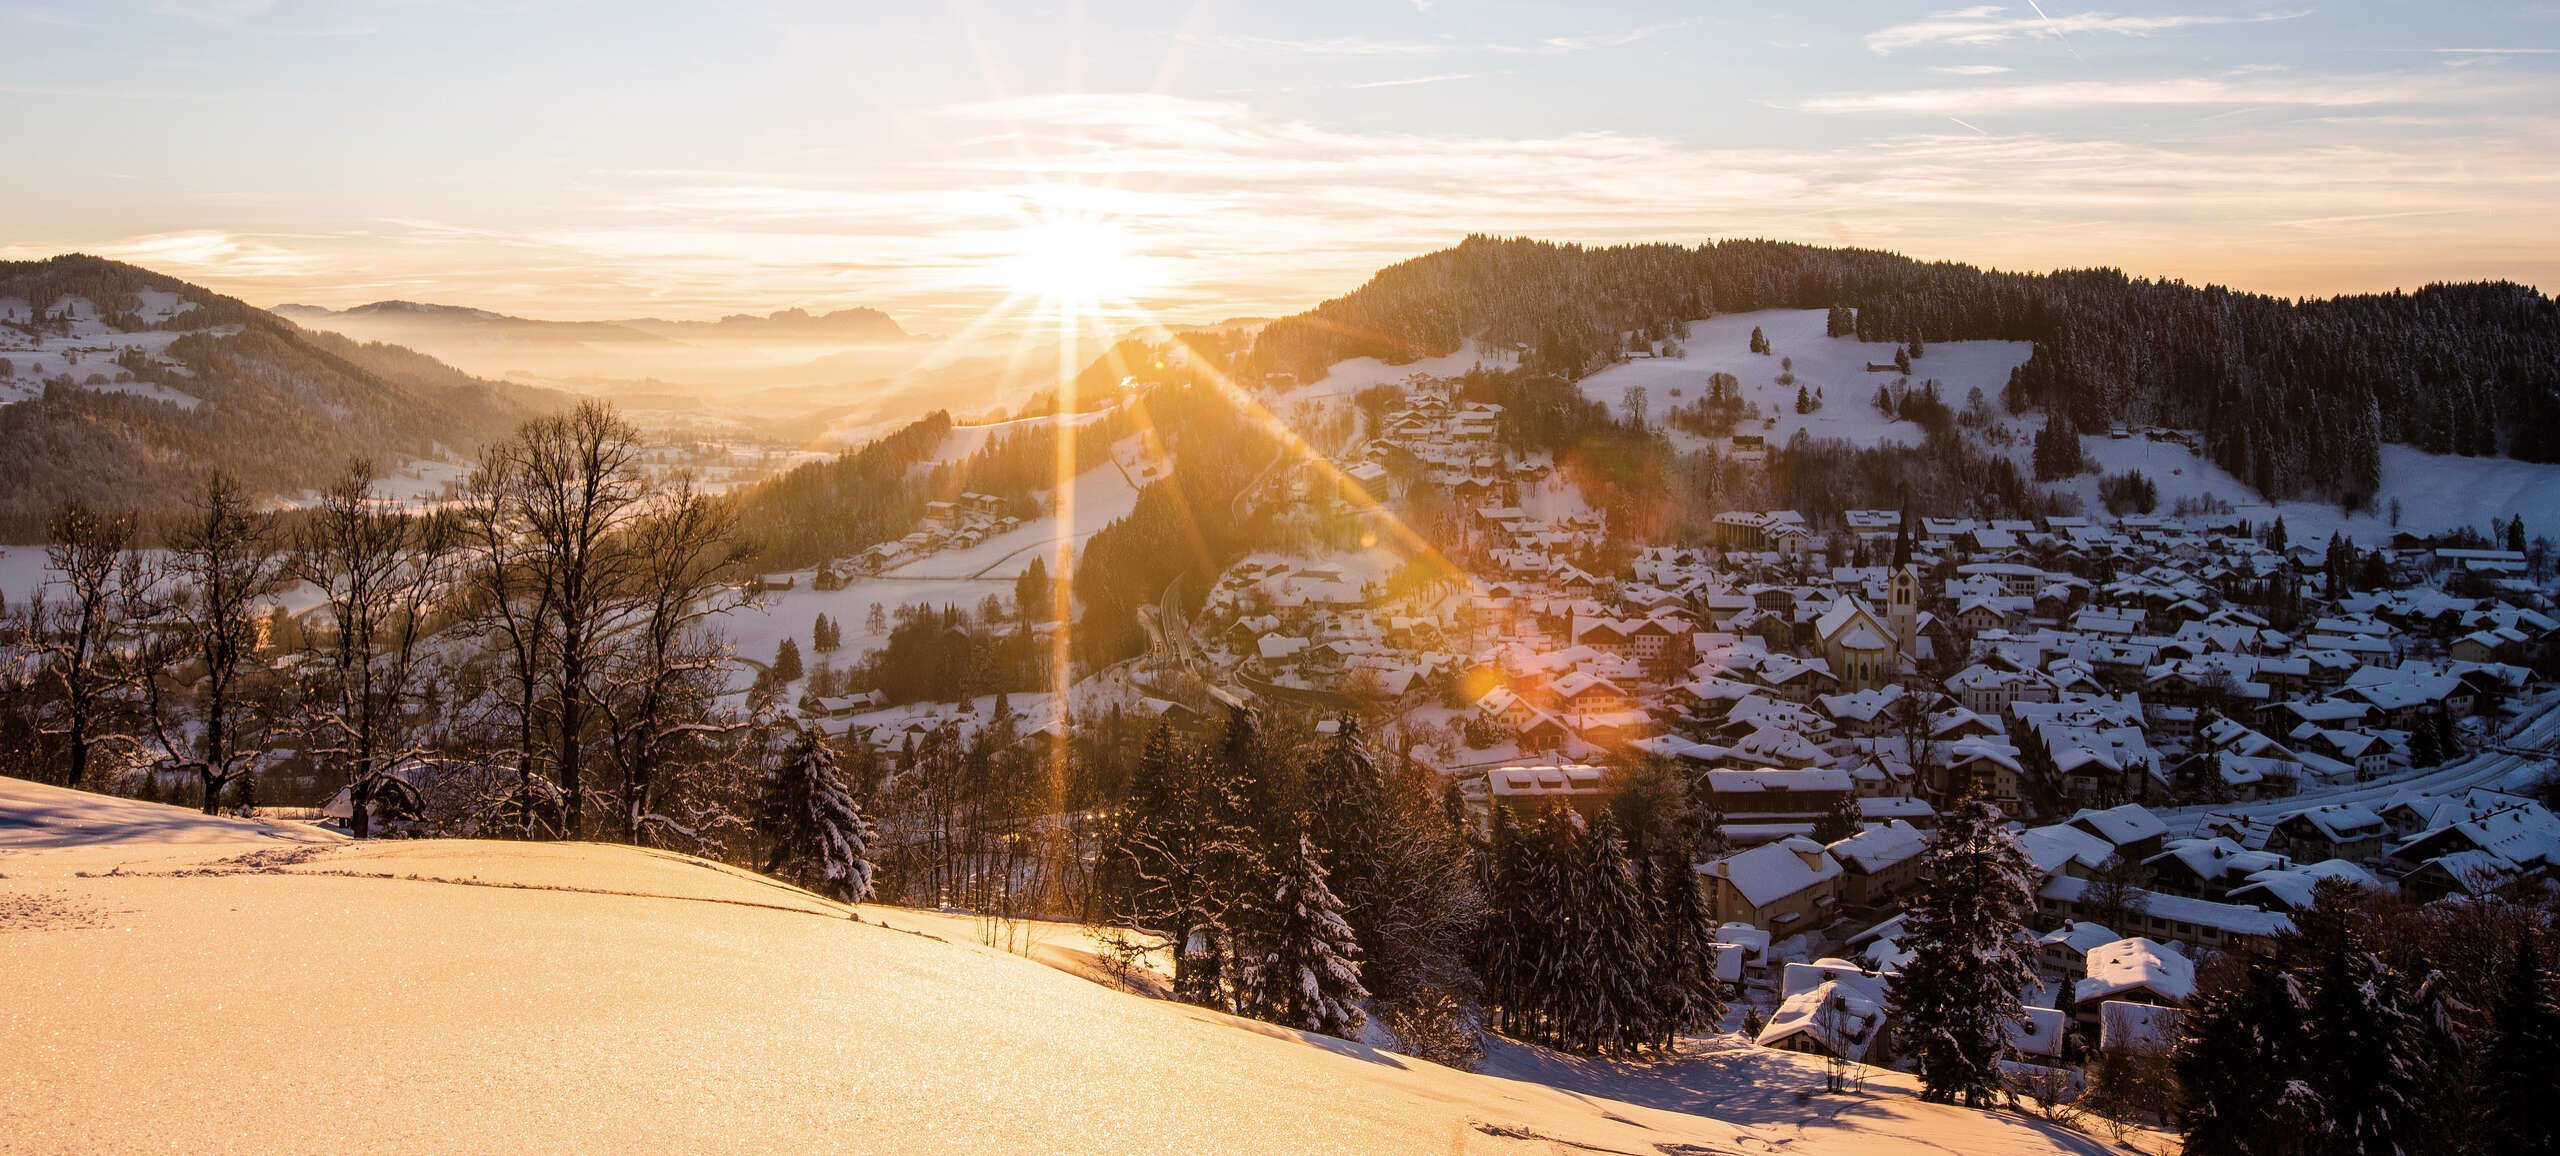 Sonne geht hinter dem verschneiten Ort von Oberstaufen unter.